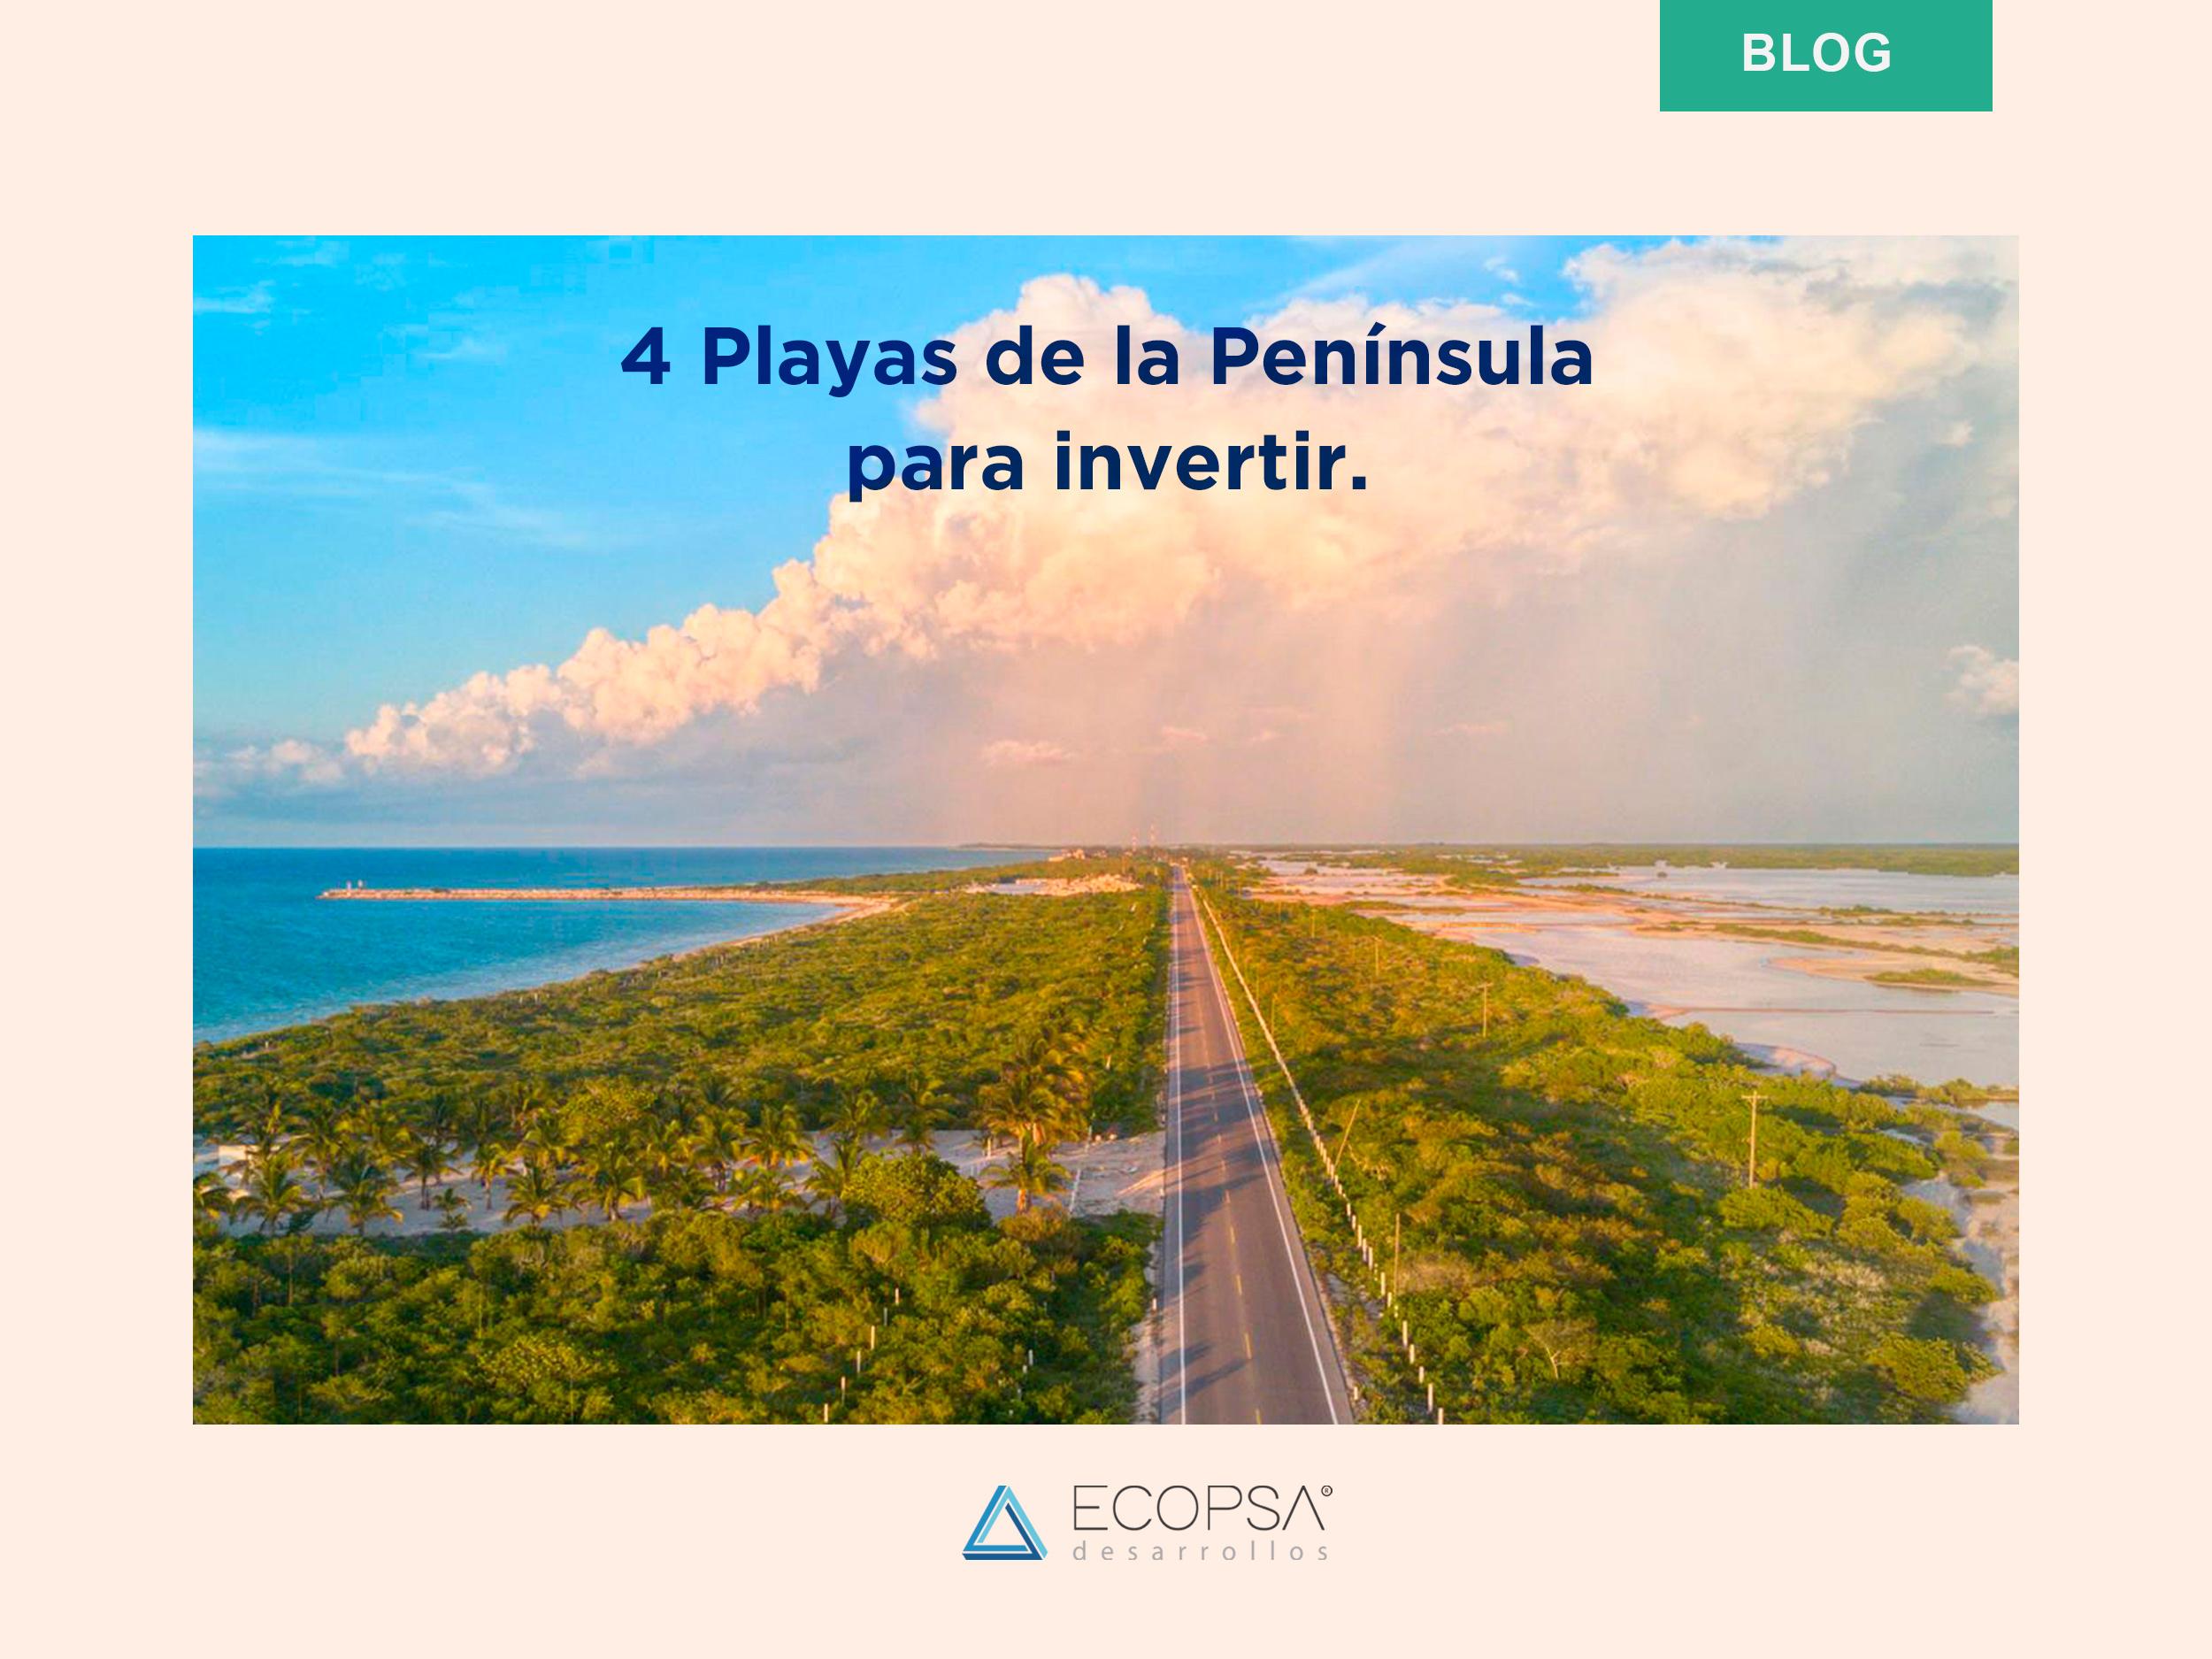 4 playas del la península de Yucatán para invertir